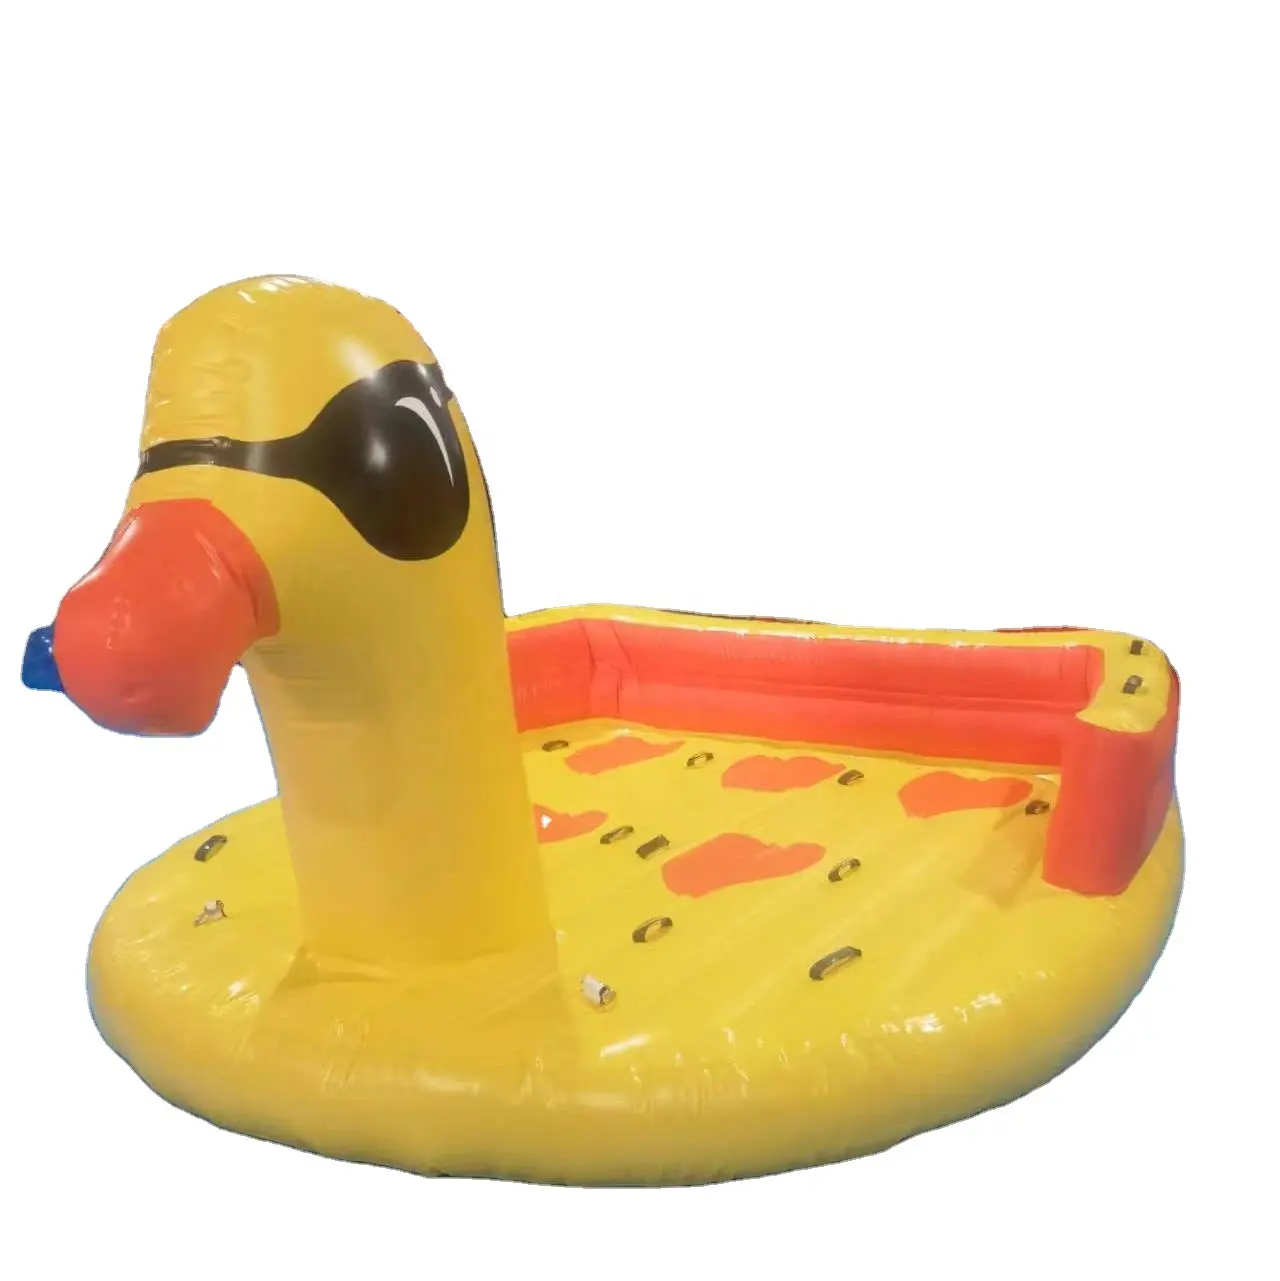 Nuova versione big yellow duck gonfiabile galleggiante isola lago/mare galleggiante sedili per piscina gonfiabile galleggiante con design personalizzato